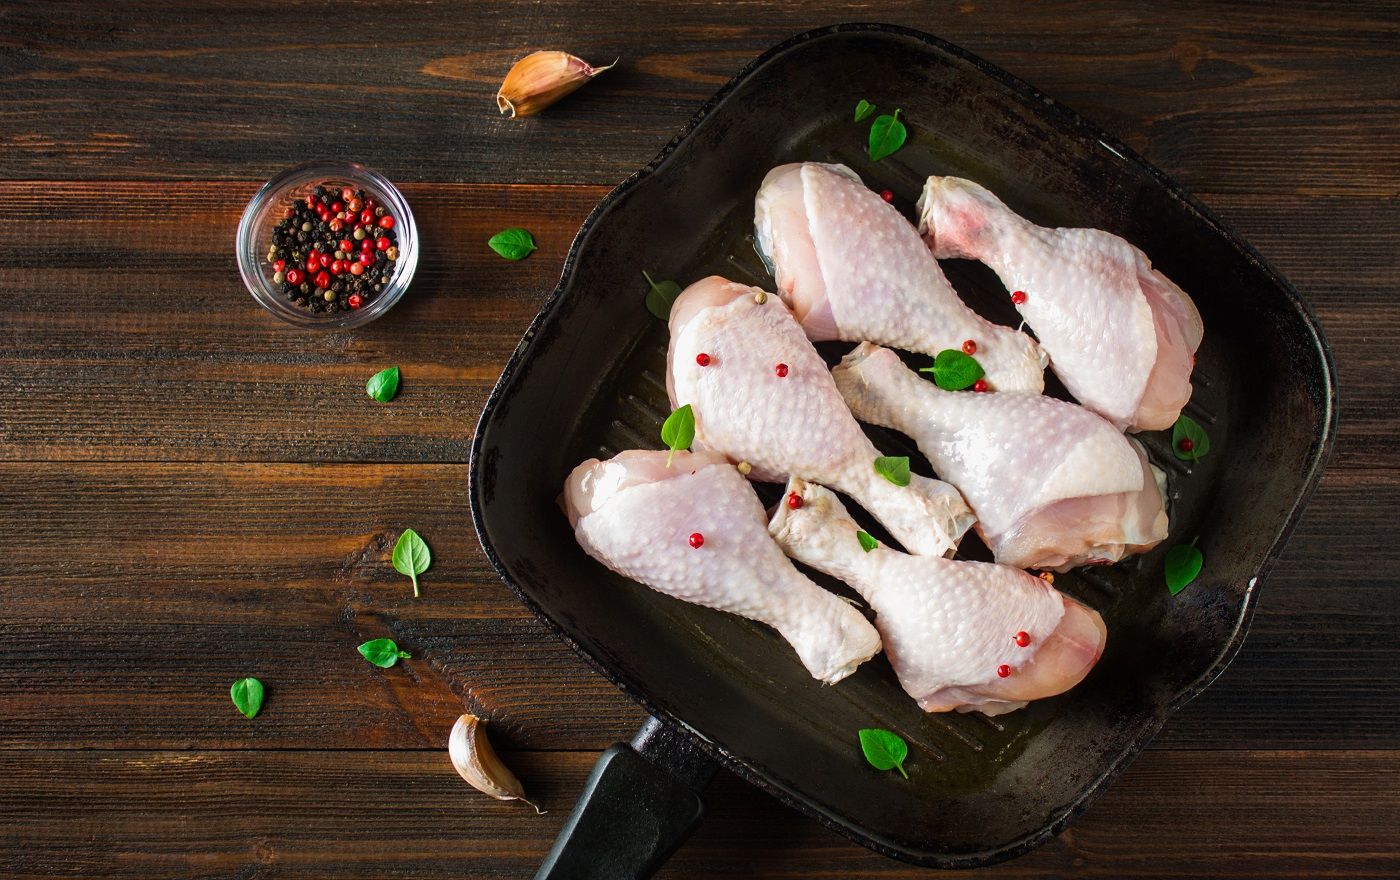 Cuisses de poulet cru dans une poêle sur une table en bois.  Ingrédients de viande pour la cuisson.  Vue de dessus.  Fermer.